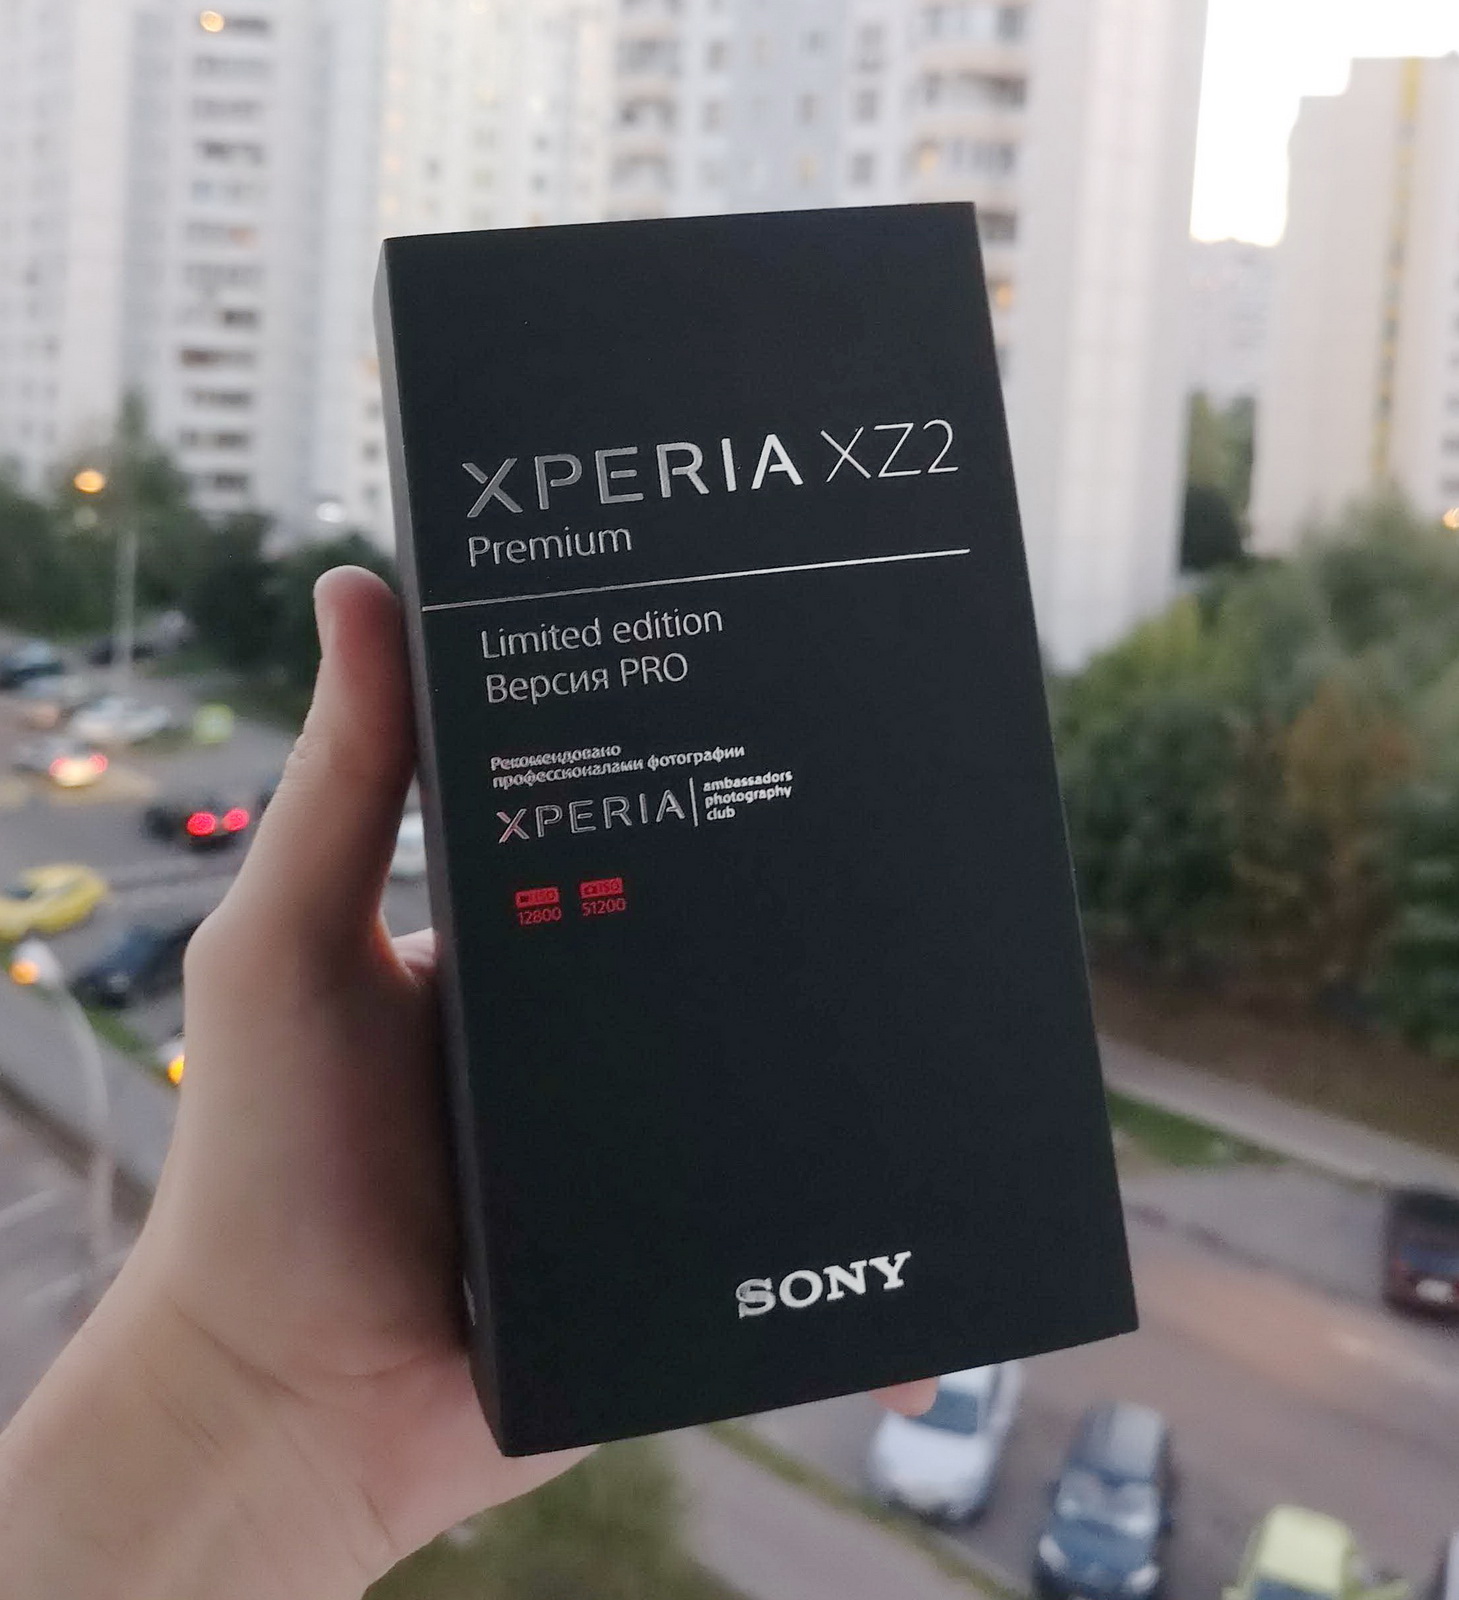 Почему самый дорогой смартфон на Android стоит так дорого? Обзор Sony Xperia XZ2 Premium Limited Edition